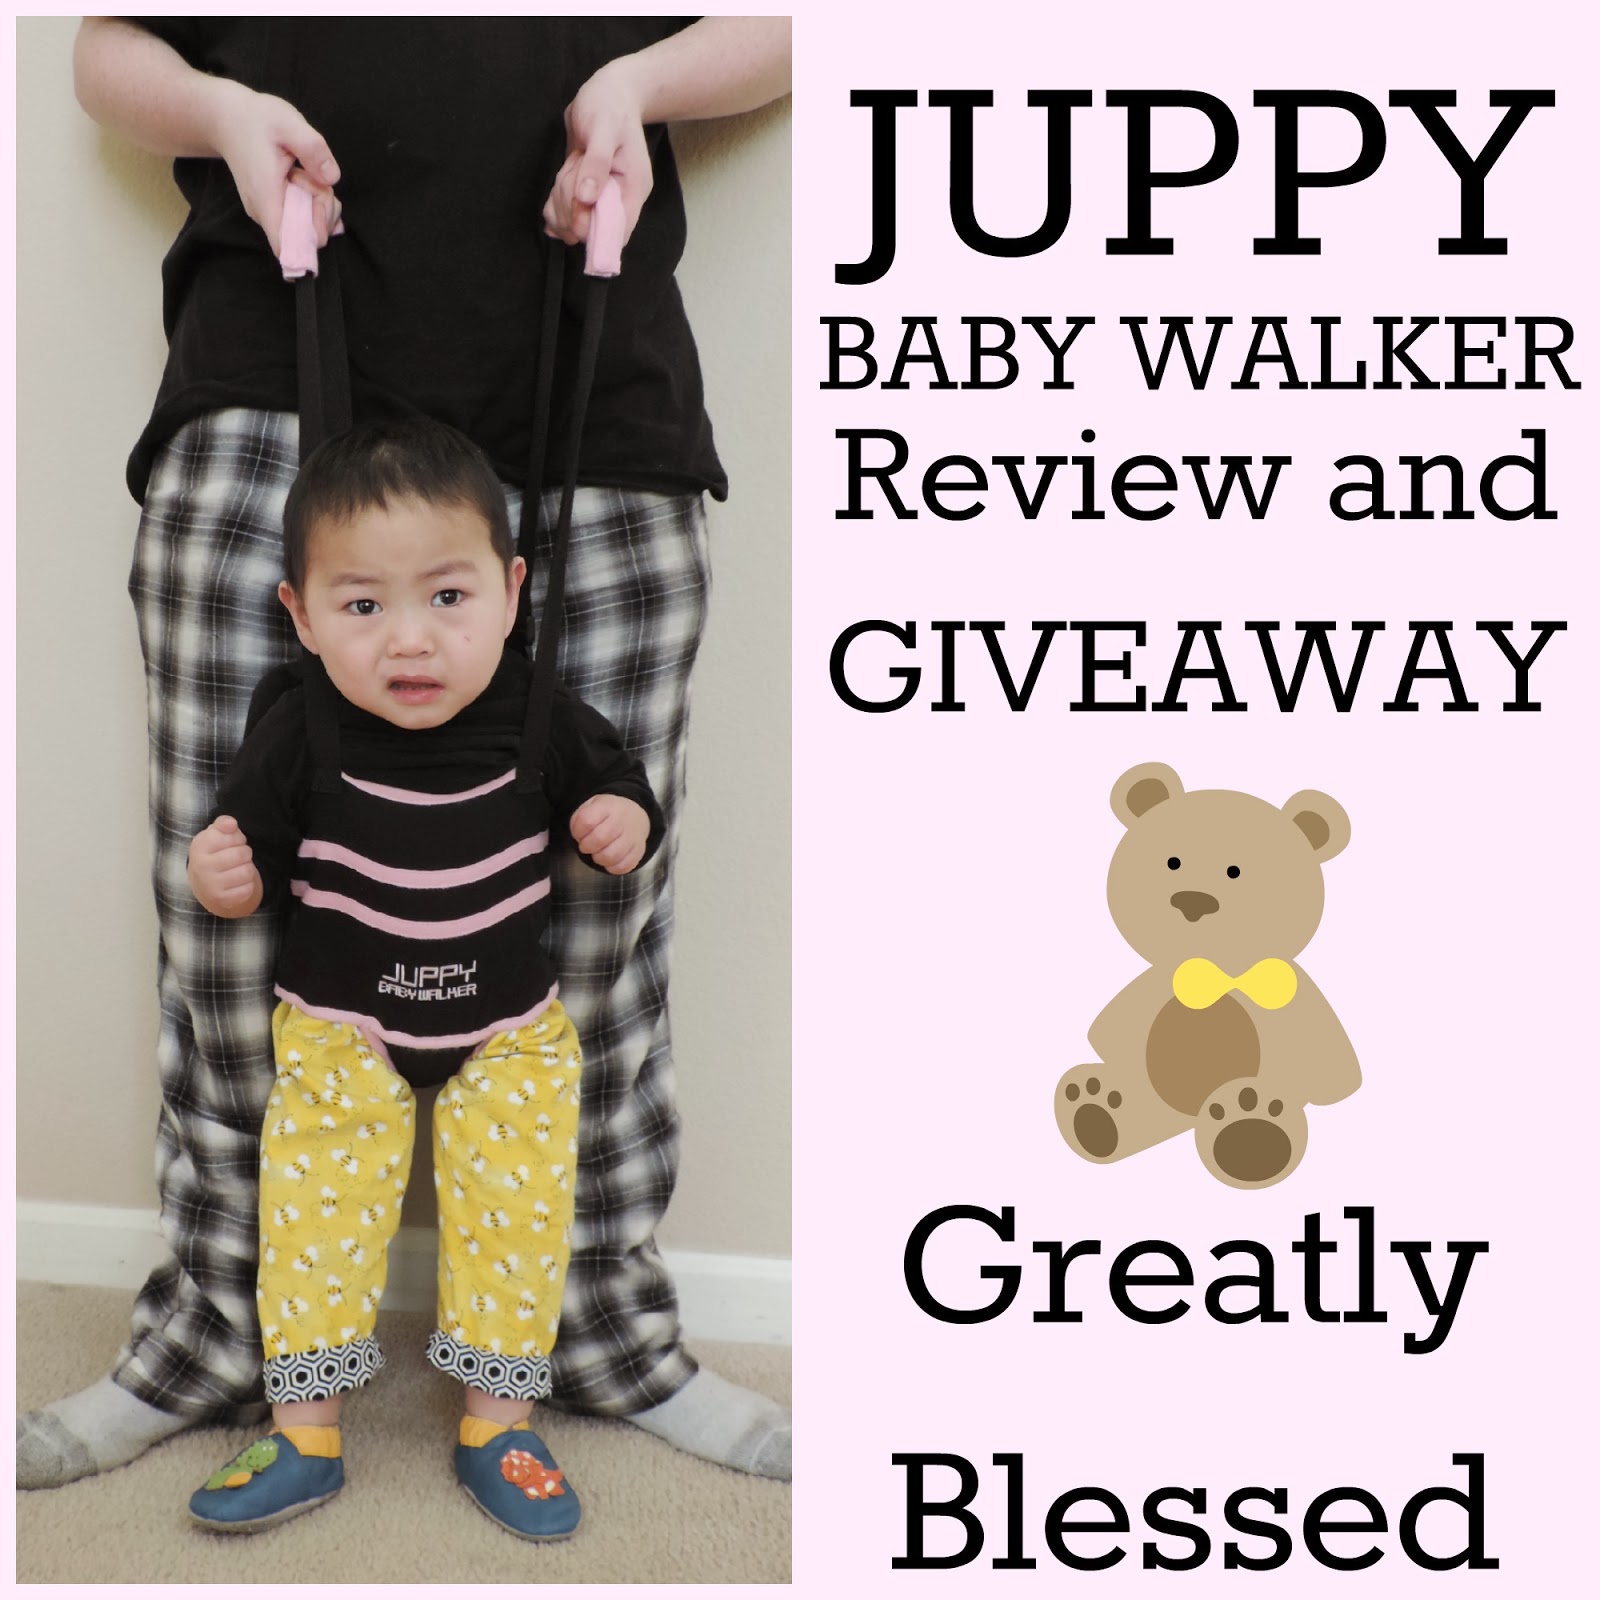 the juppy baby walker